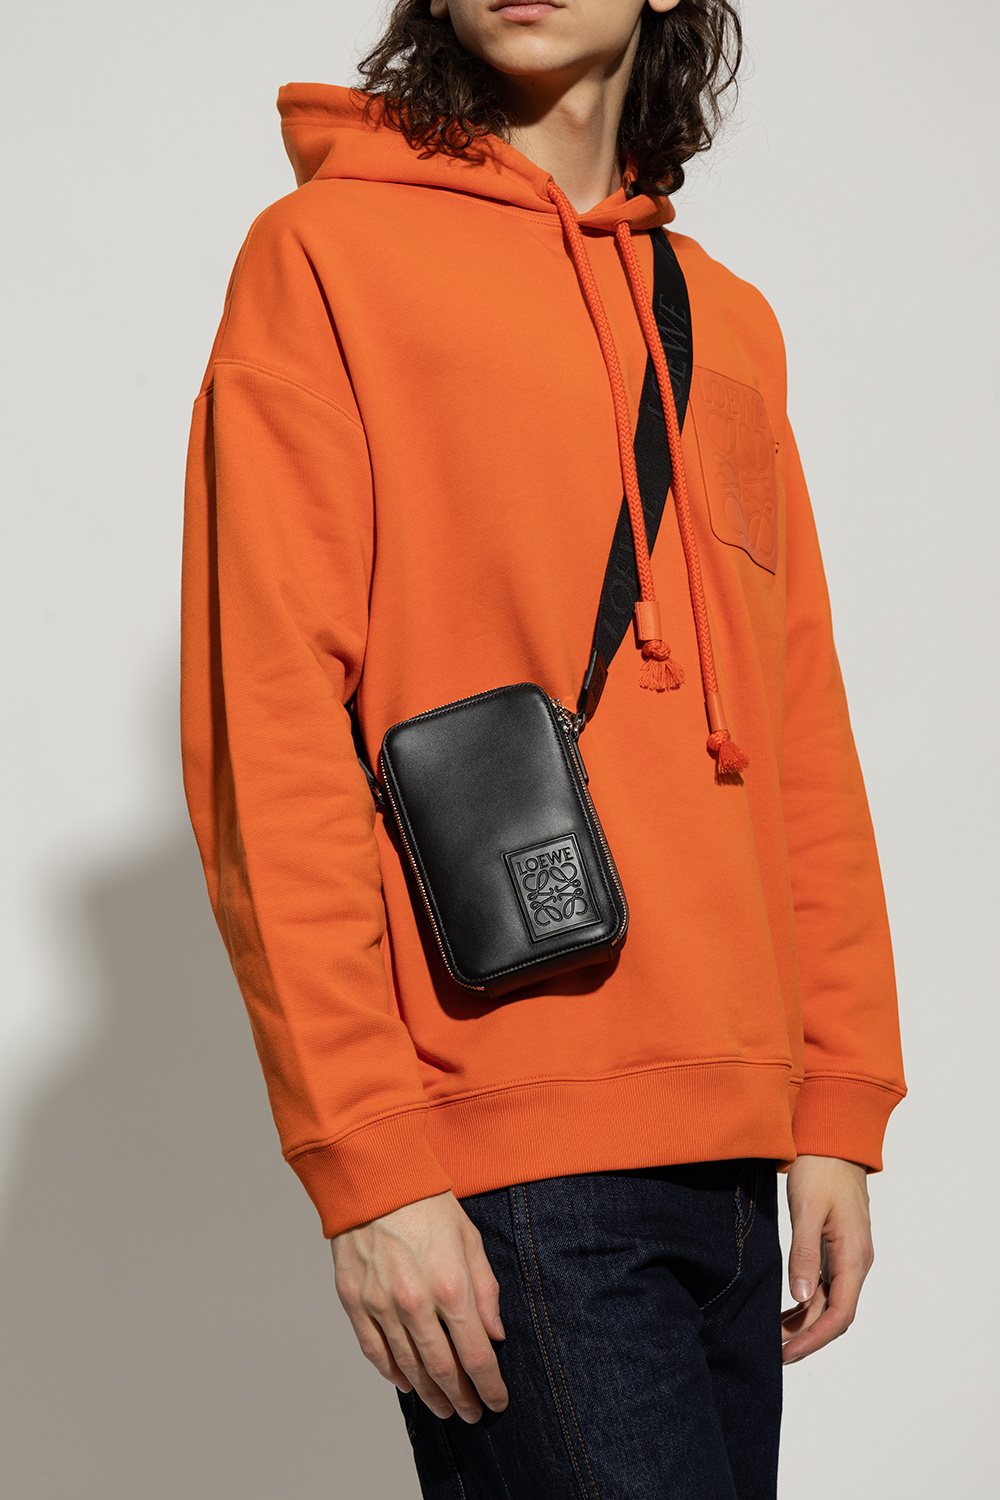 Loewe ‘Vertical’ shoulder bag